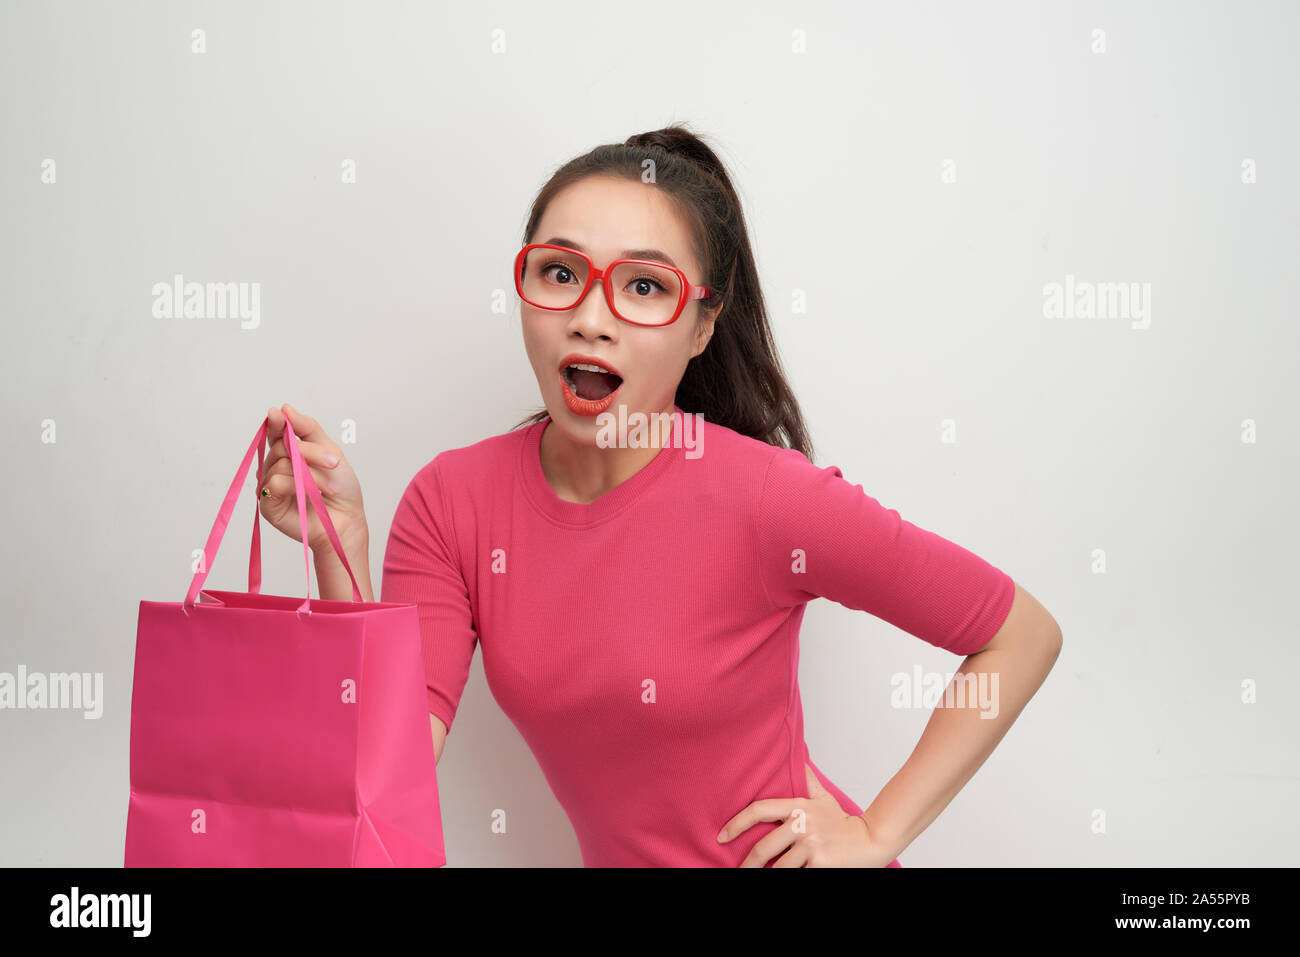 Paquetes de compras mujer alegre color rosa Foto de stock